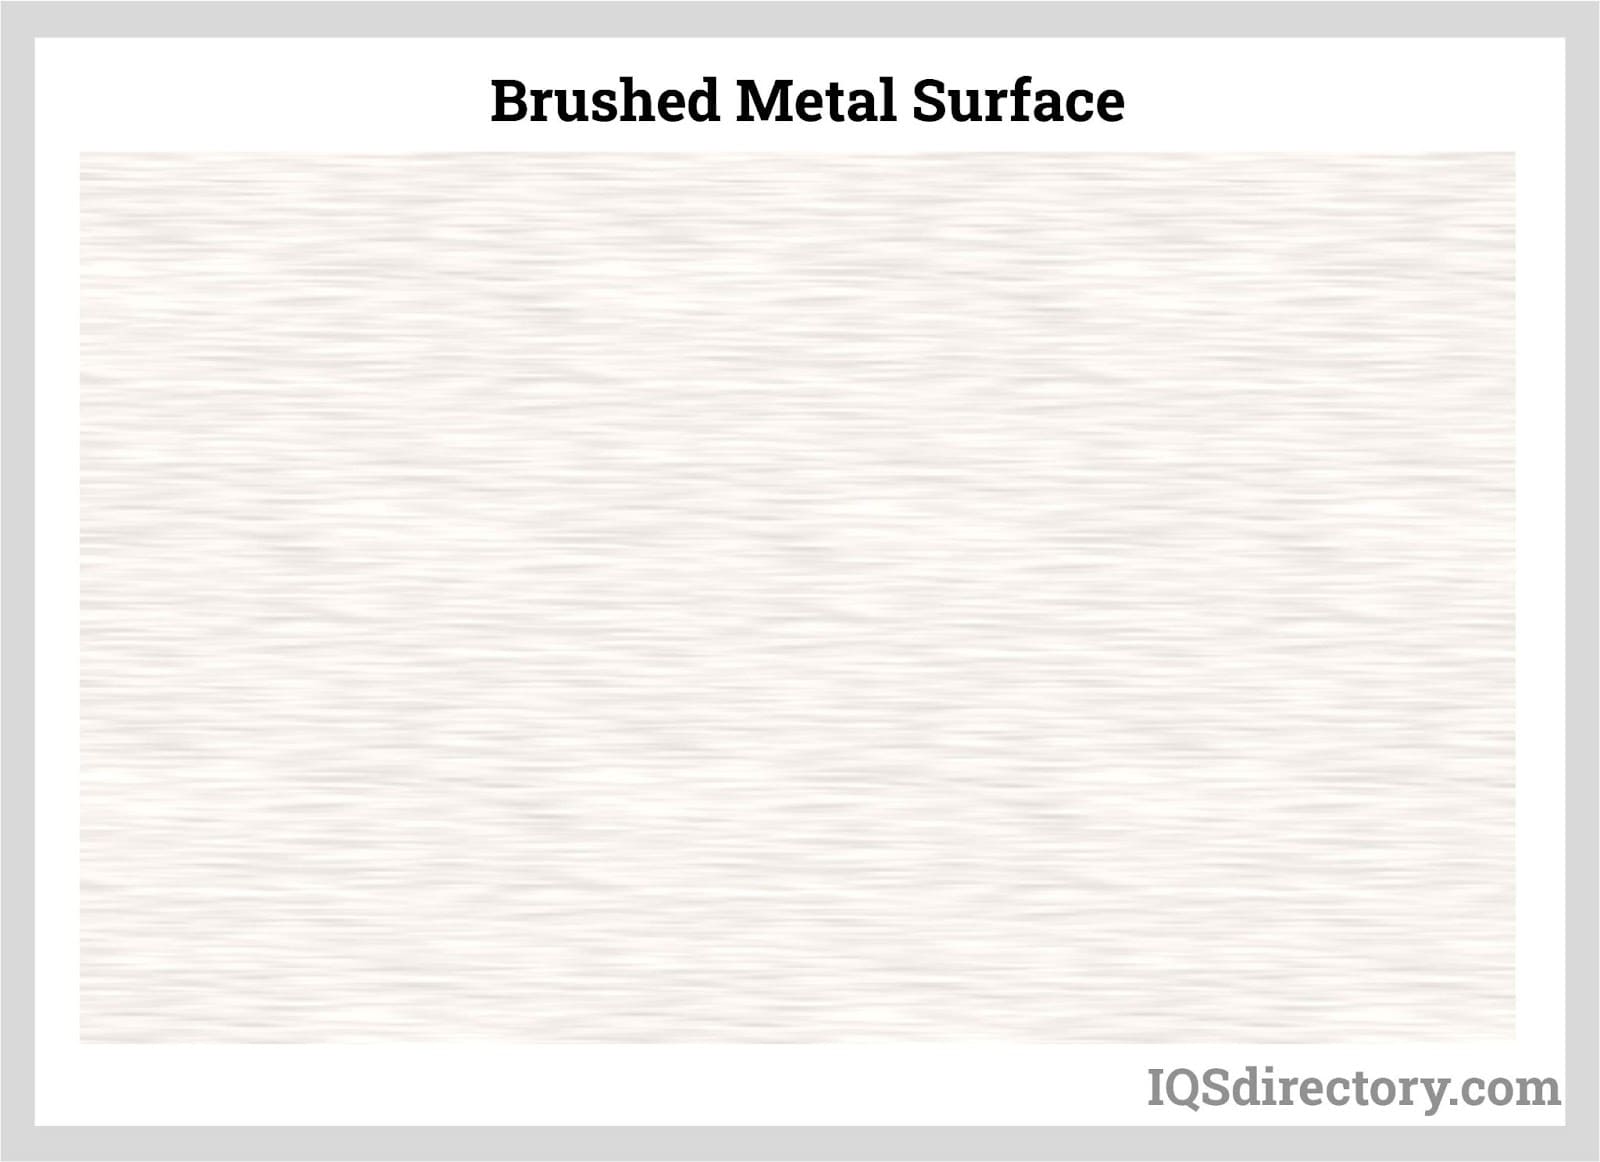 Brushed Metal Surface